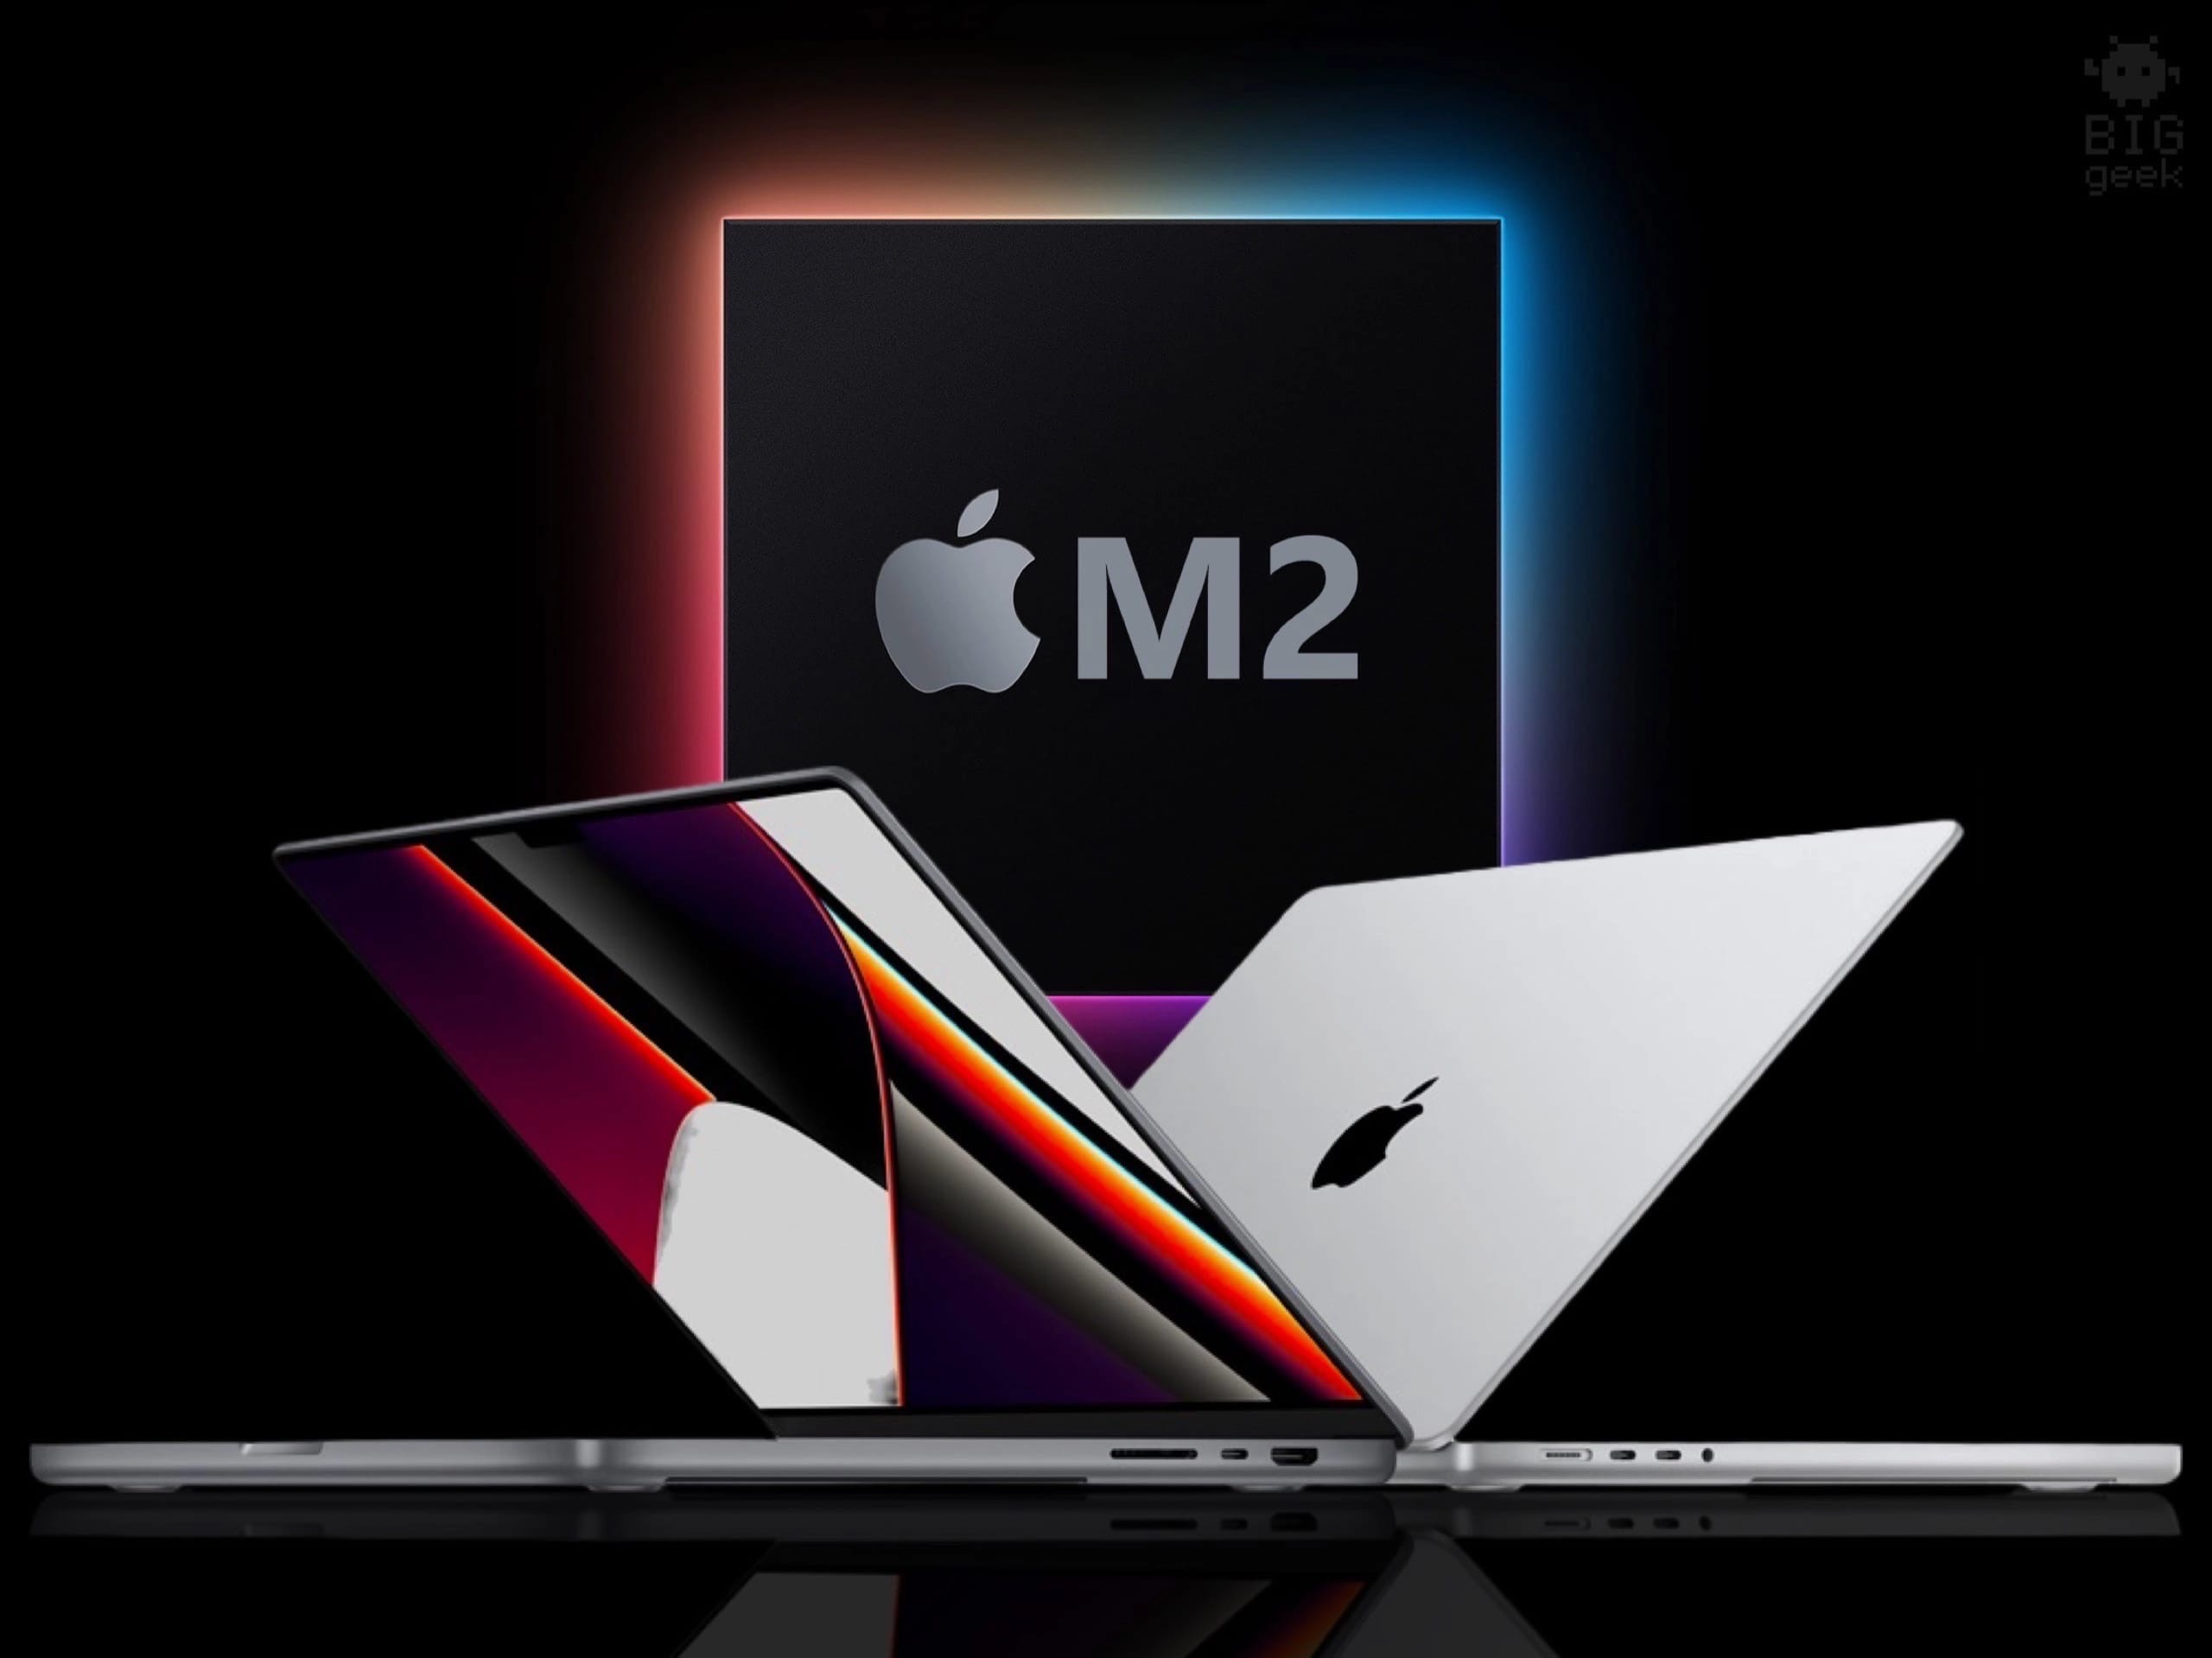 По информации инсайдера Dylandkt - Apple представит MacBook Pro 14 на процессоре M2 во второй половине 2022 года.